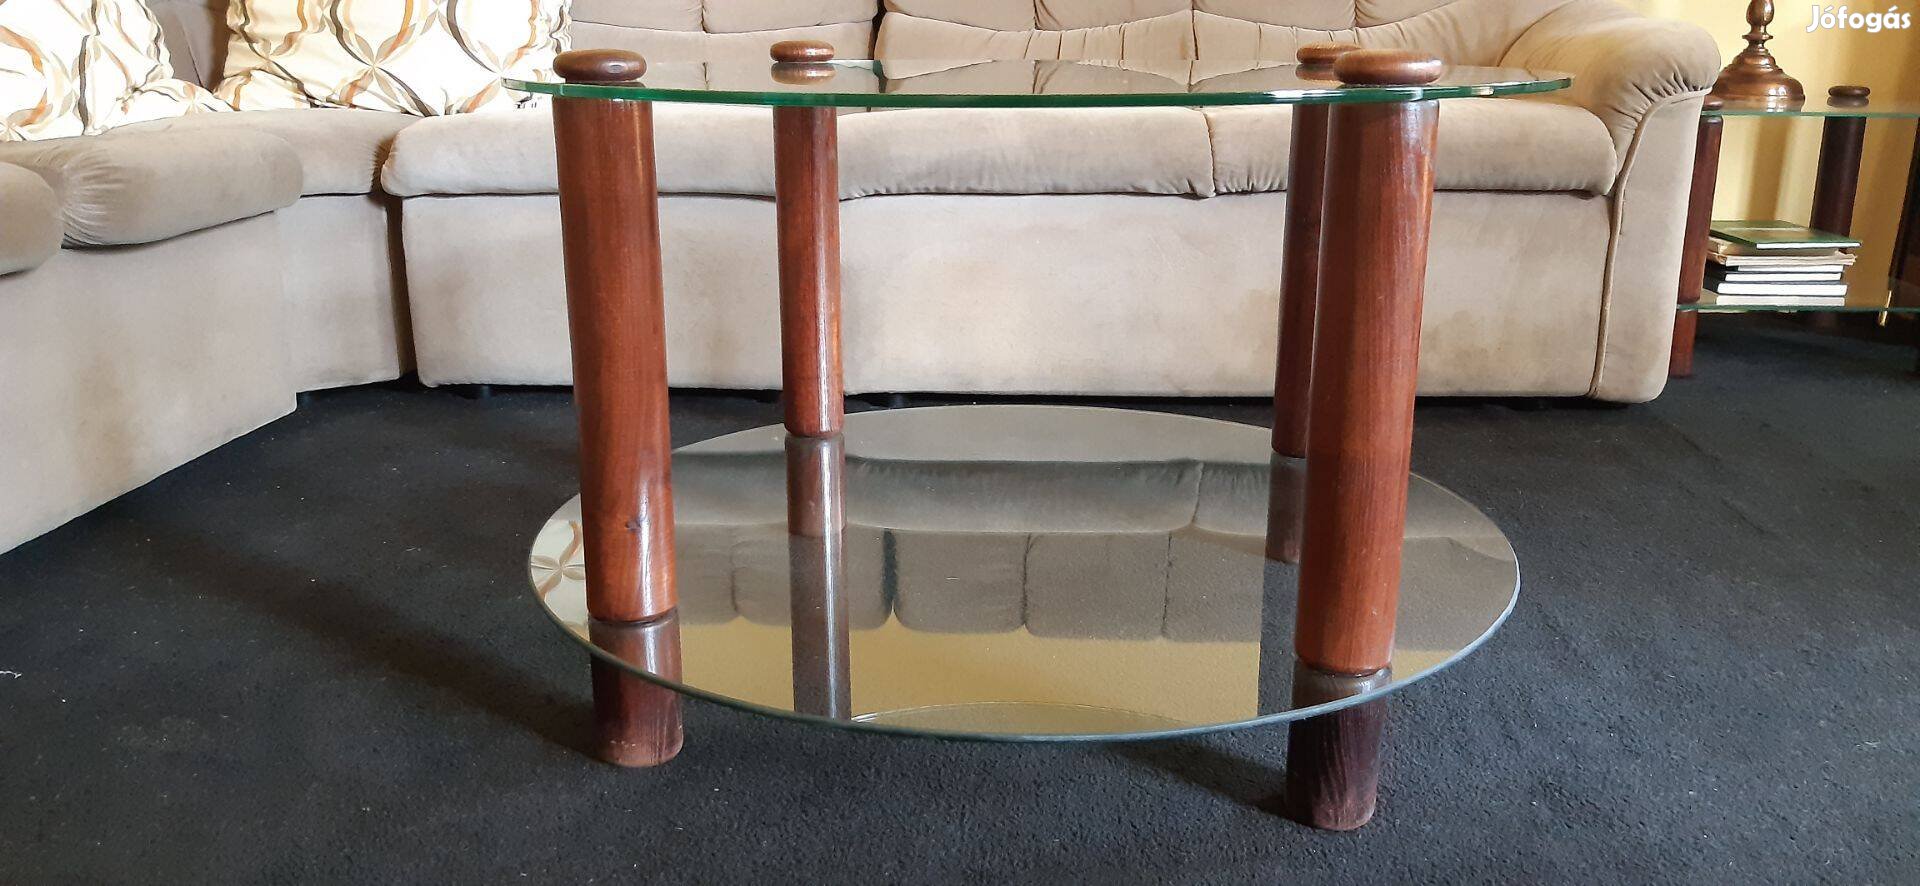 Üveg lapos asztal